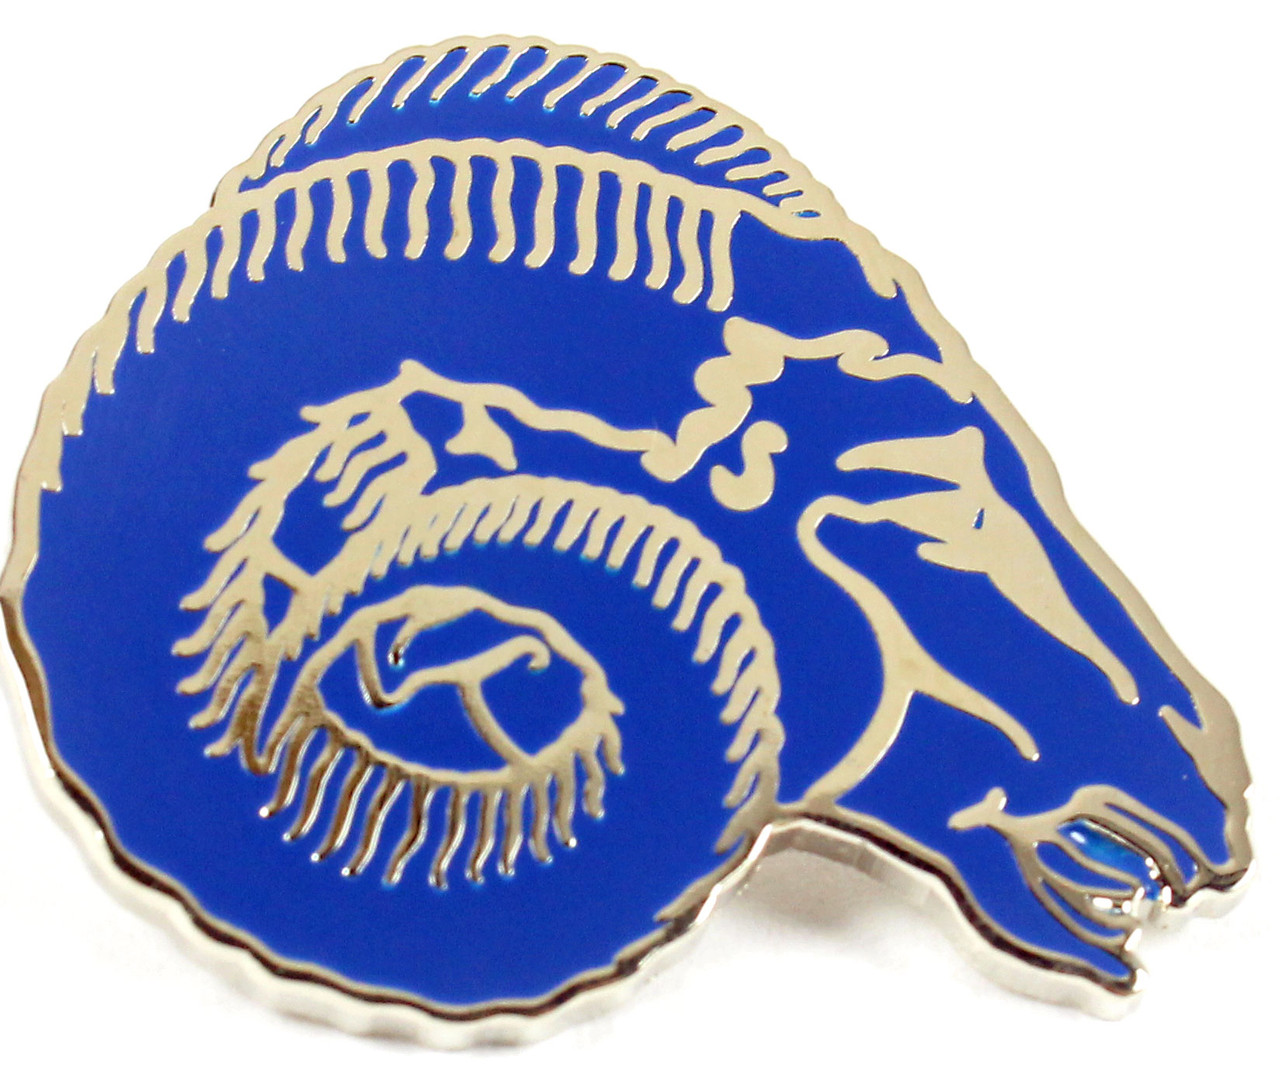 Los Angeles Rams Vintage Logo Pin